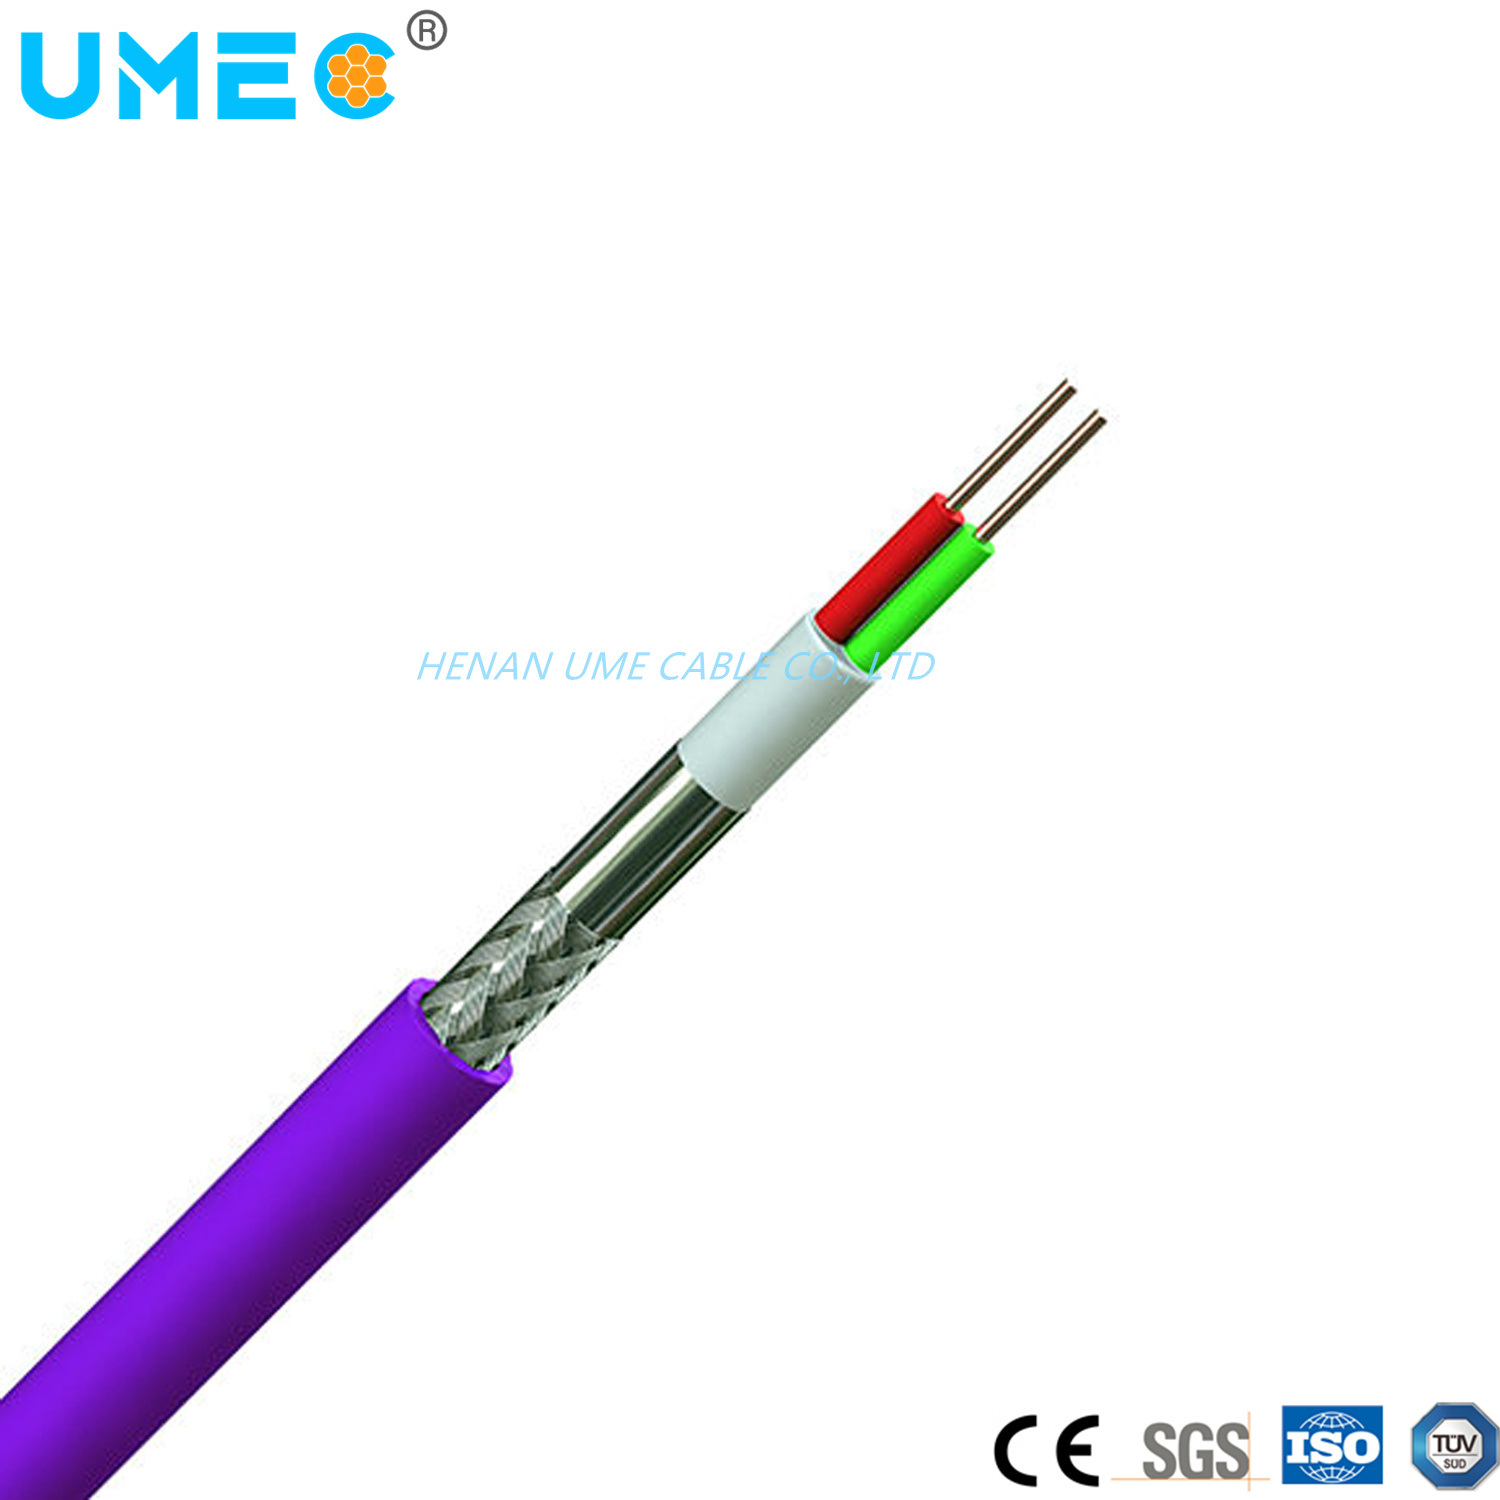 
                Conductor de cobre de baja tensión Siemens 6xv1830-0eh10 Cable Cable Eléctrico Industrial
            